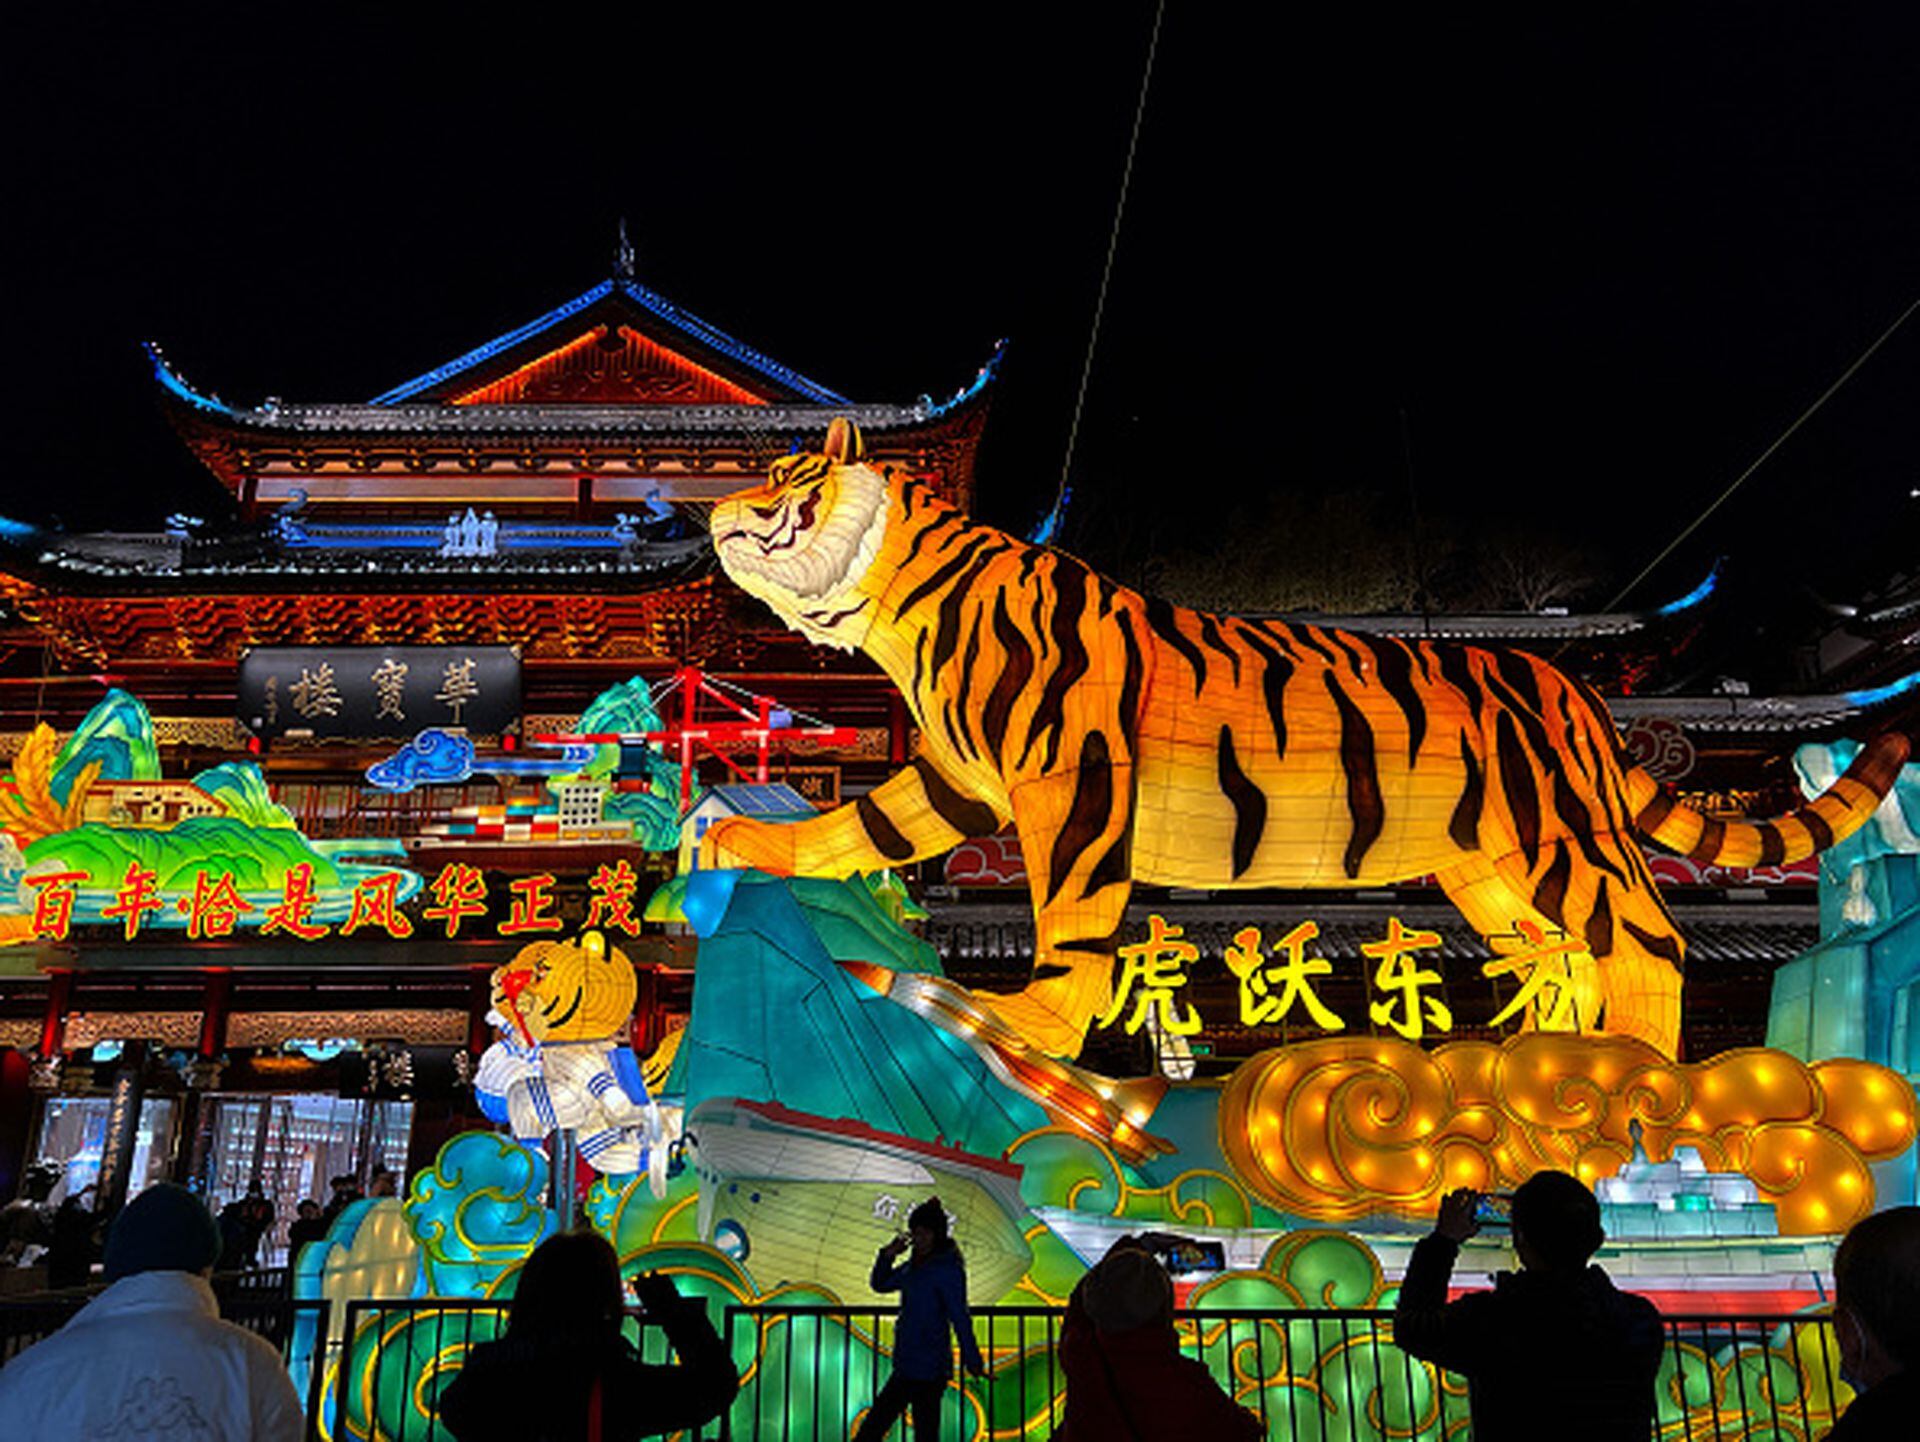 Qué signo es en el horóscopo chino? Hoy comienza el Año Nuevo del tigre